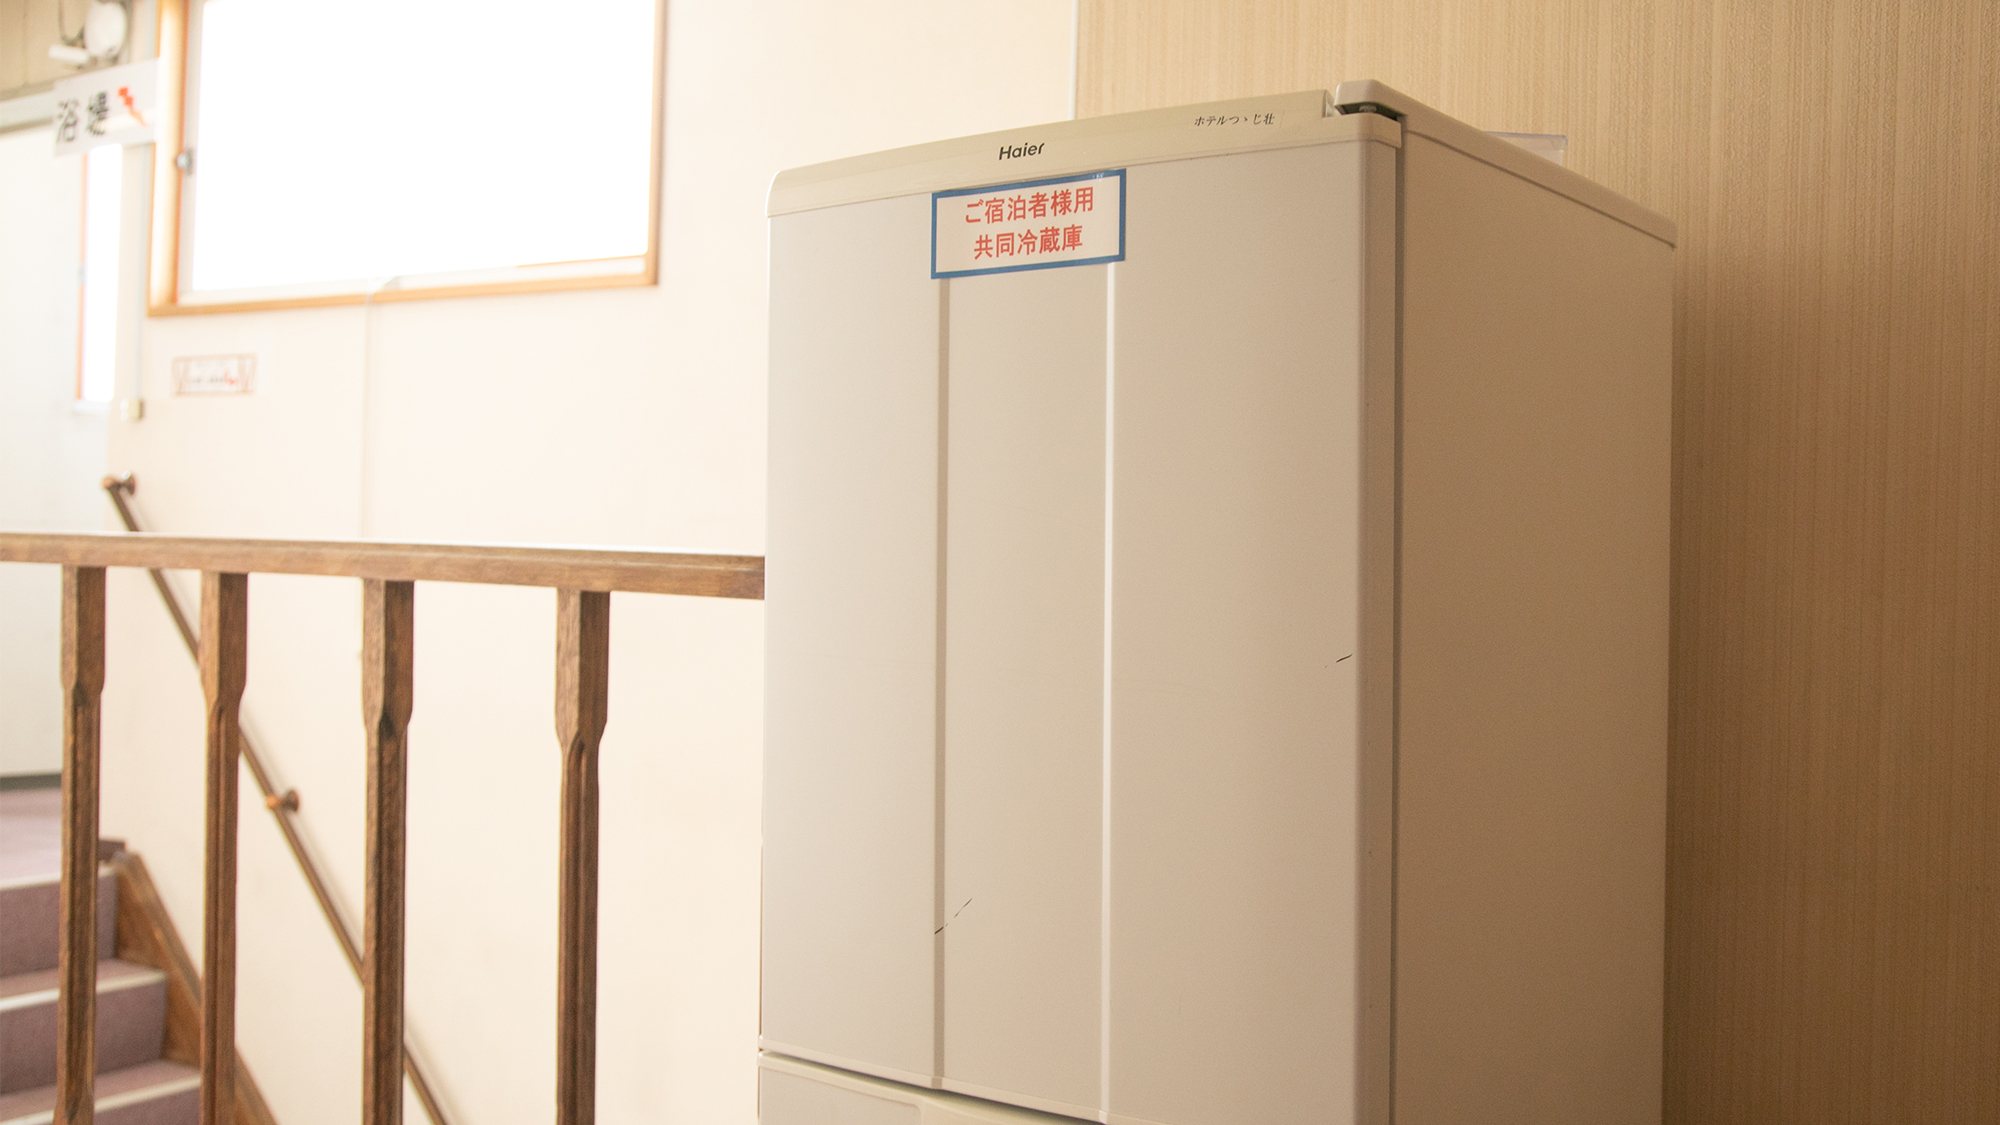 *【2F共用冷蔵庫】お部屋に冷蔵庫はありません。廊下の共用冷蔵庫のご利用をお願いしております。